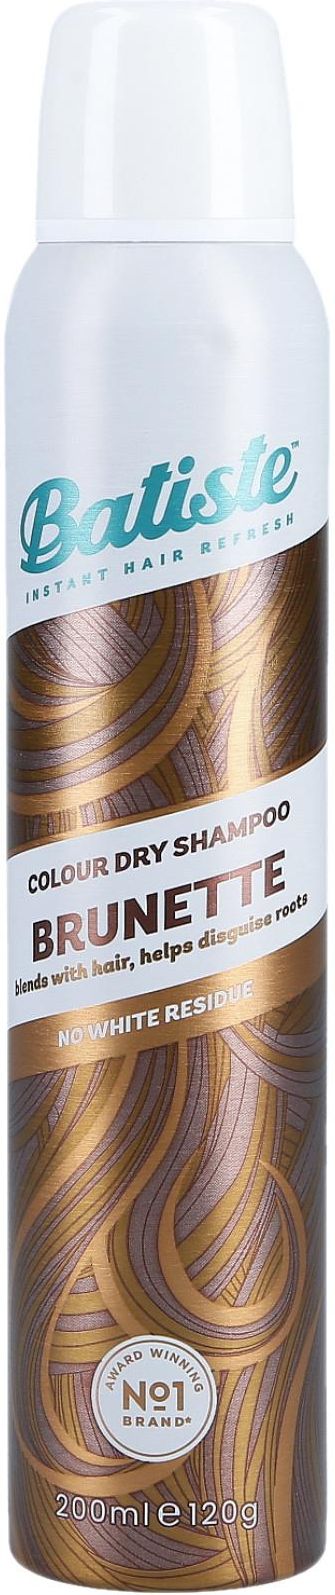 batiste suchy szampon medium brunette